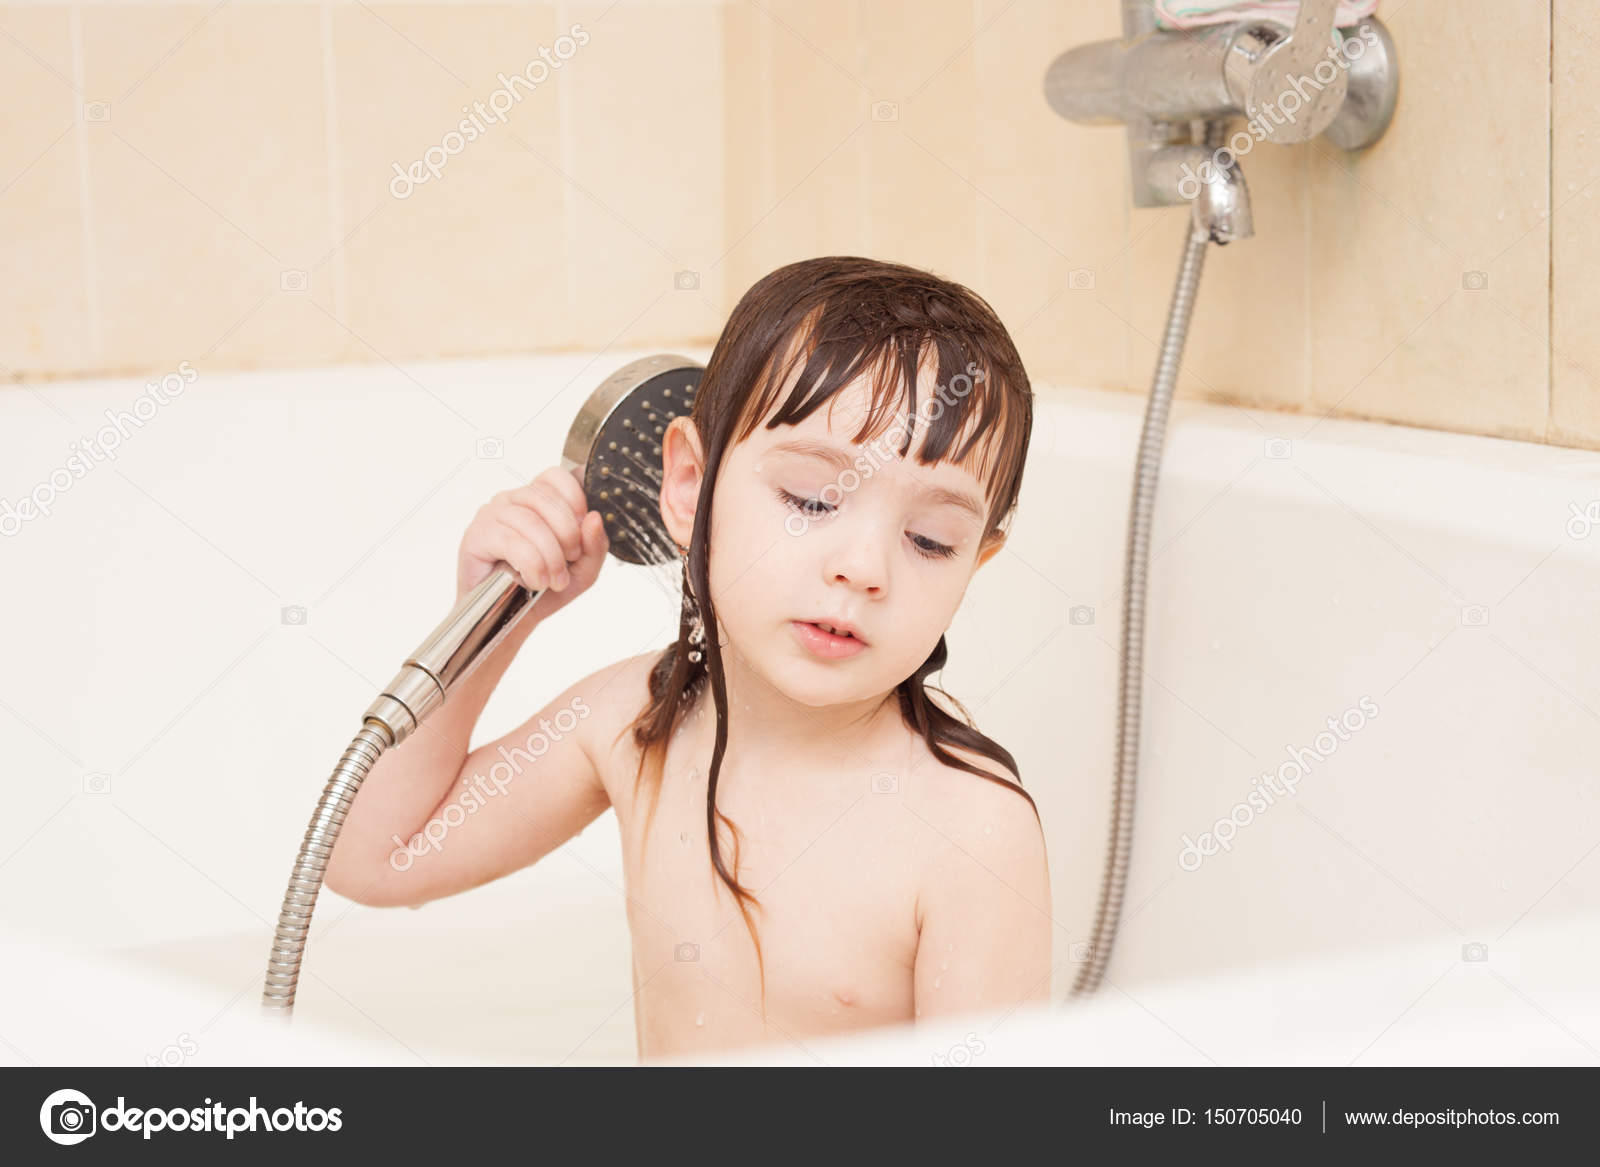 正在洗热水澡的放松的美女 库存图片. 图片 包括有 生活方式, 满足, 自然, 有机, 皮肤, 轻松, 海绵 - 195311533